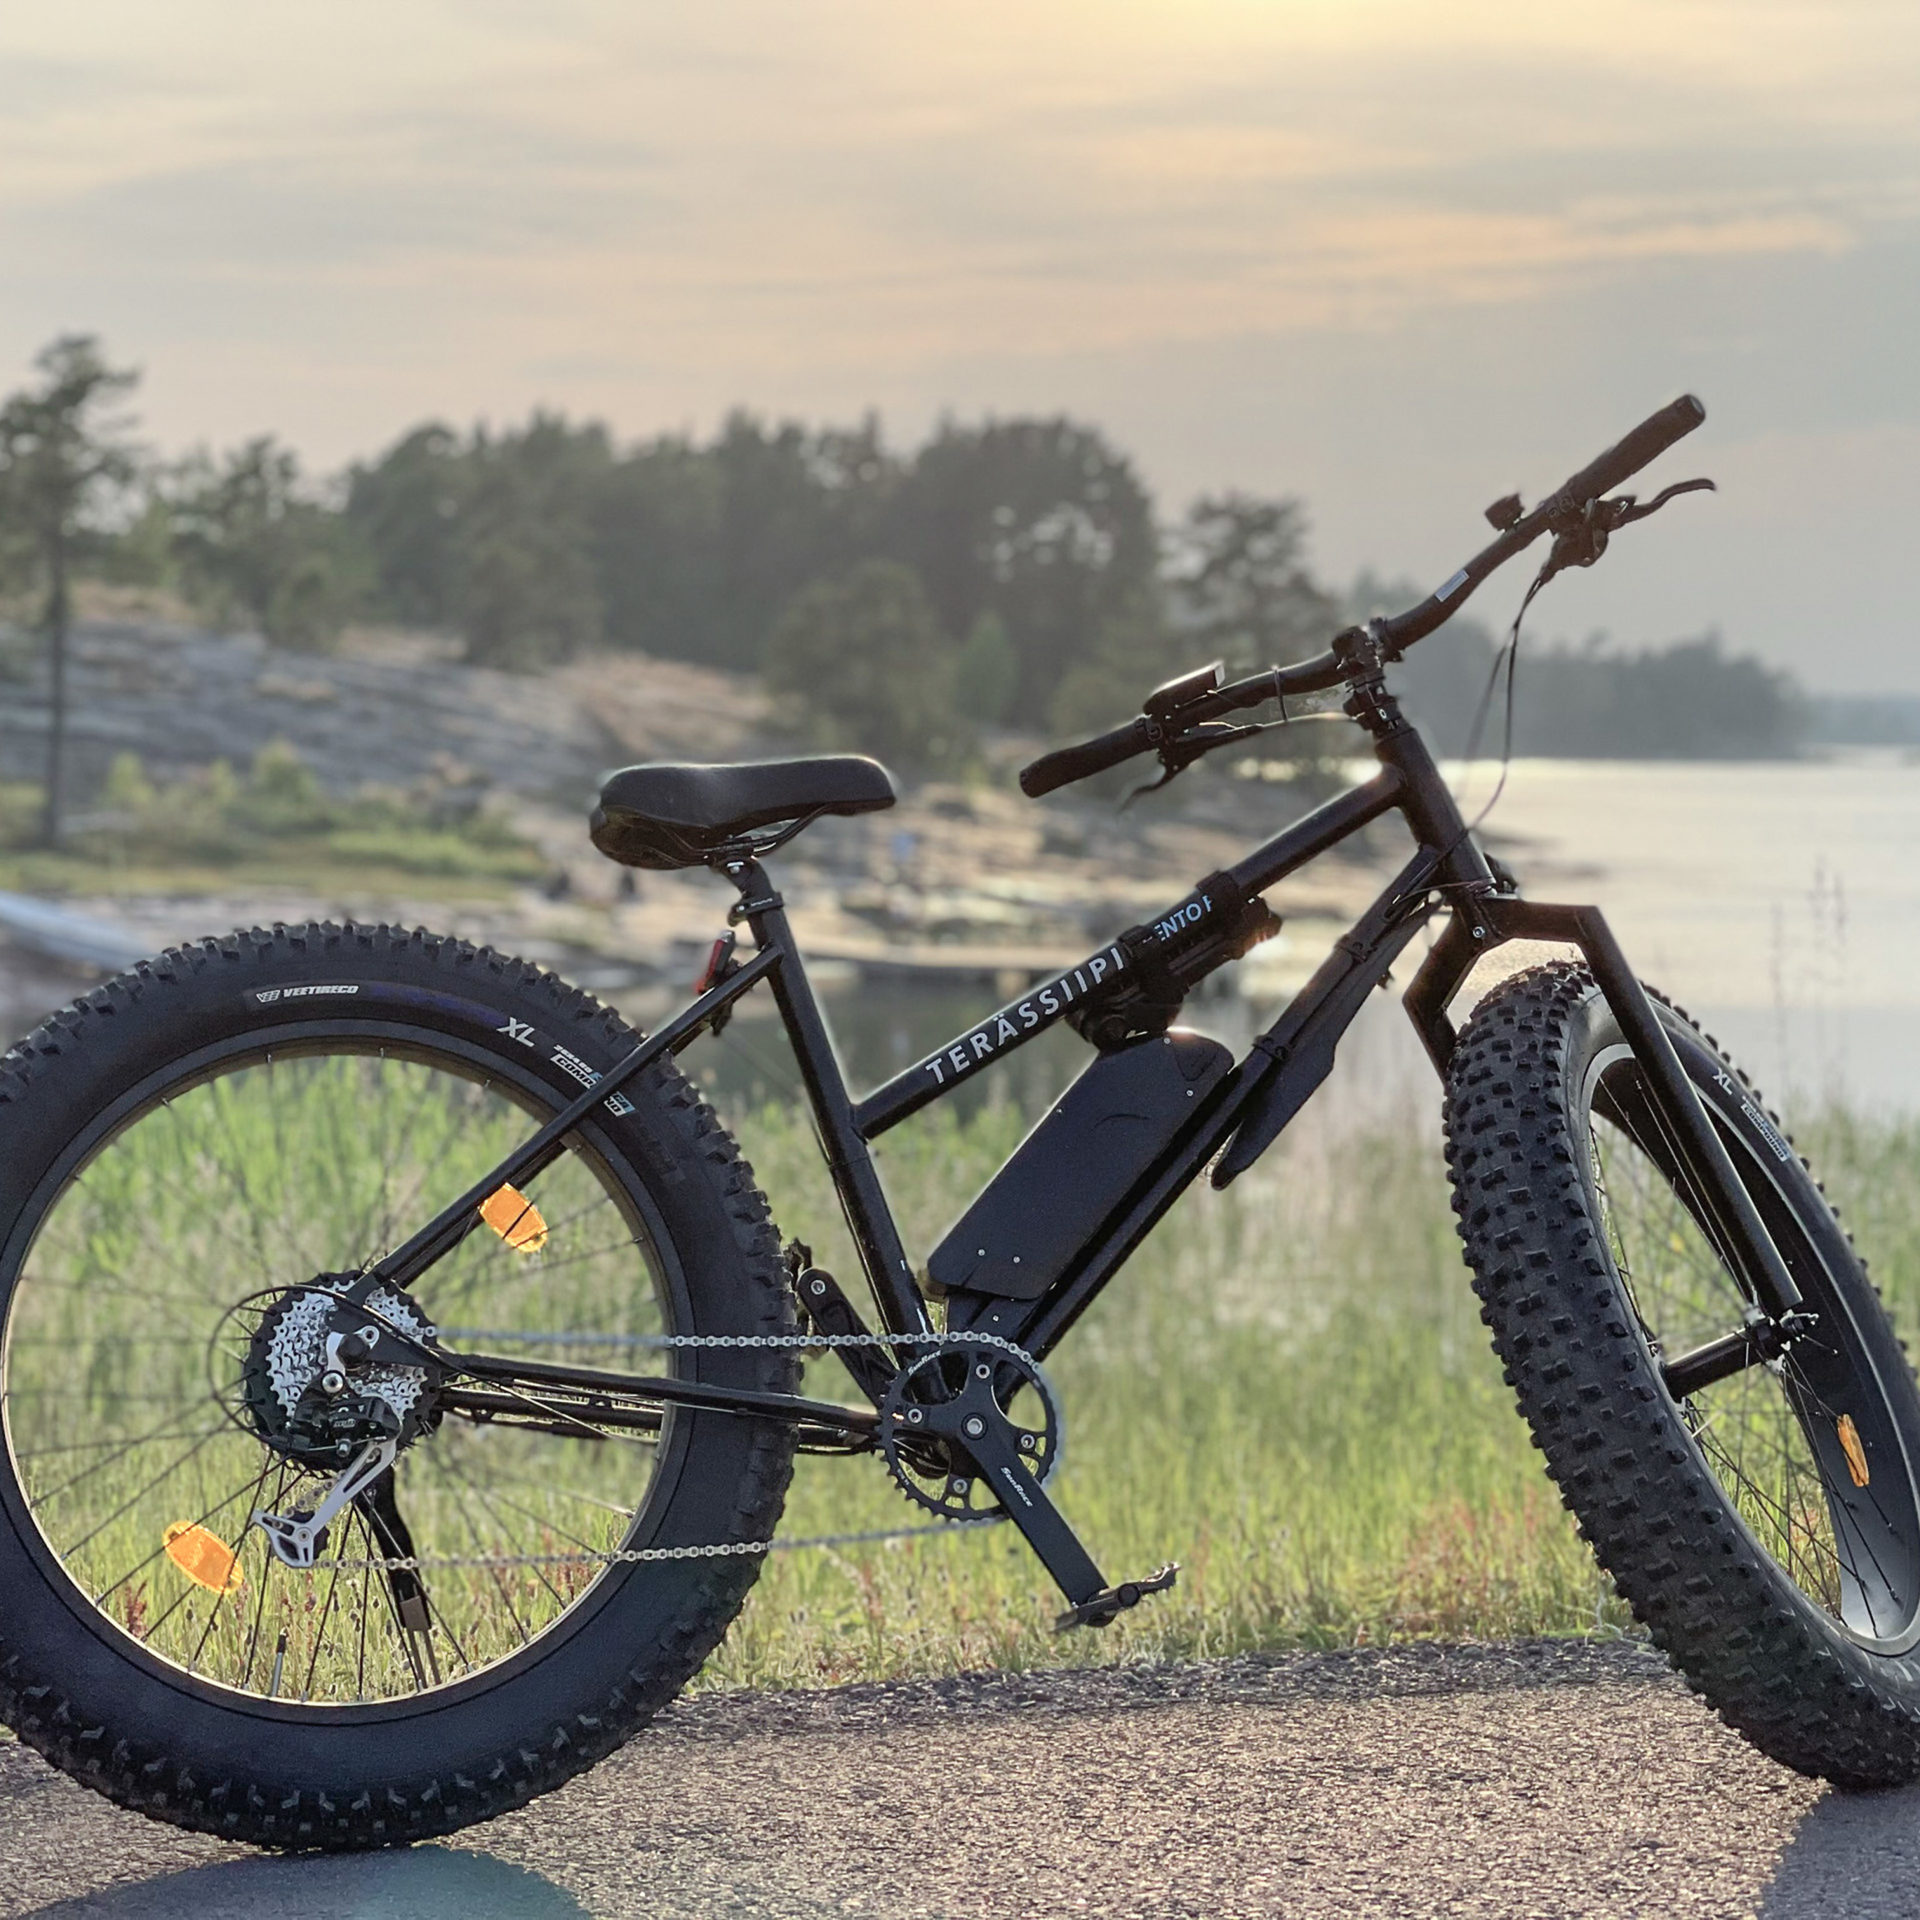 Wild Nordic Finland / rental – e-fatbike. Villi Pohjola / Wild Nordic Finland @wildnordicfinland